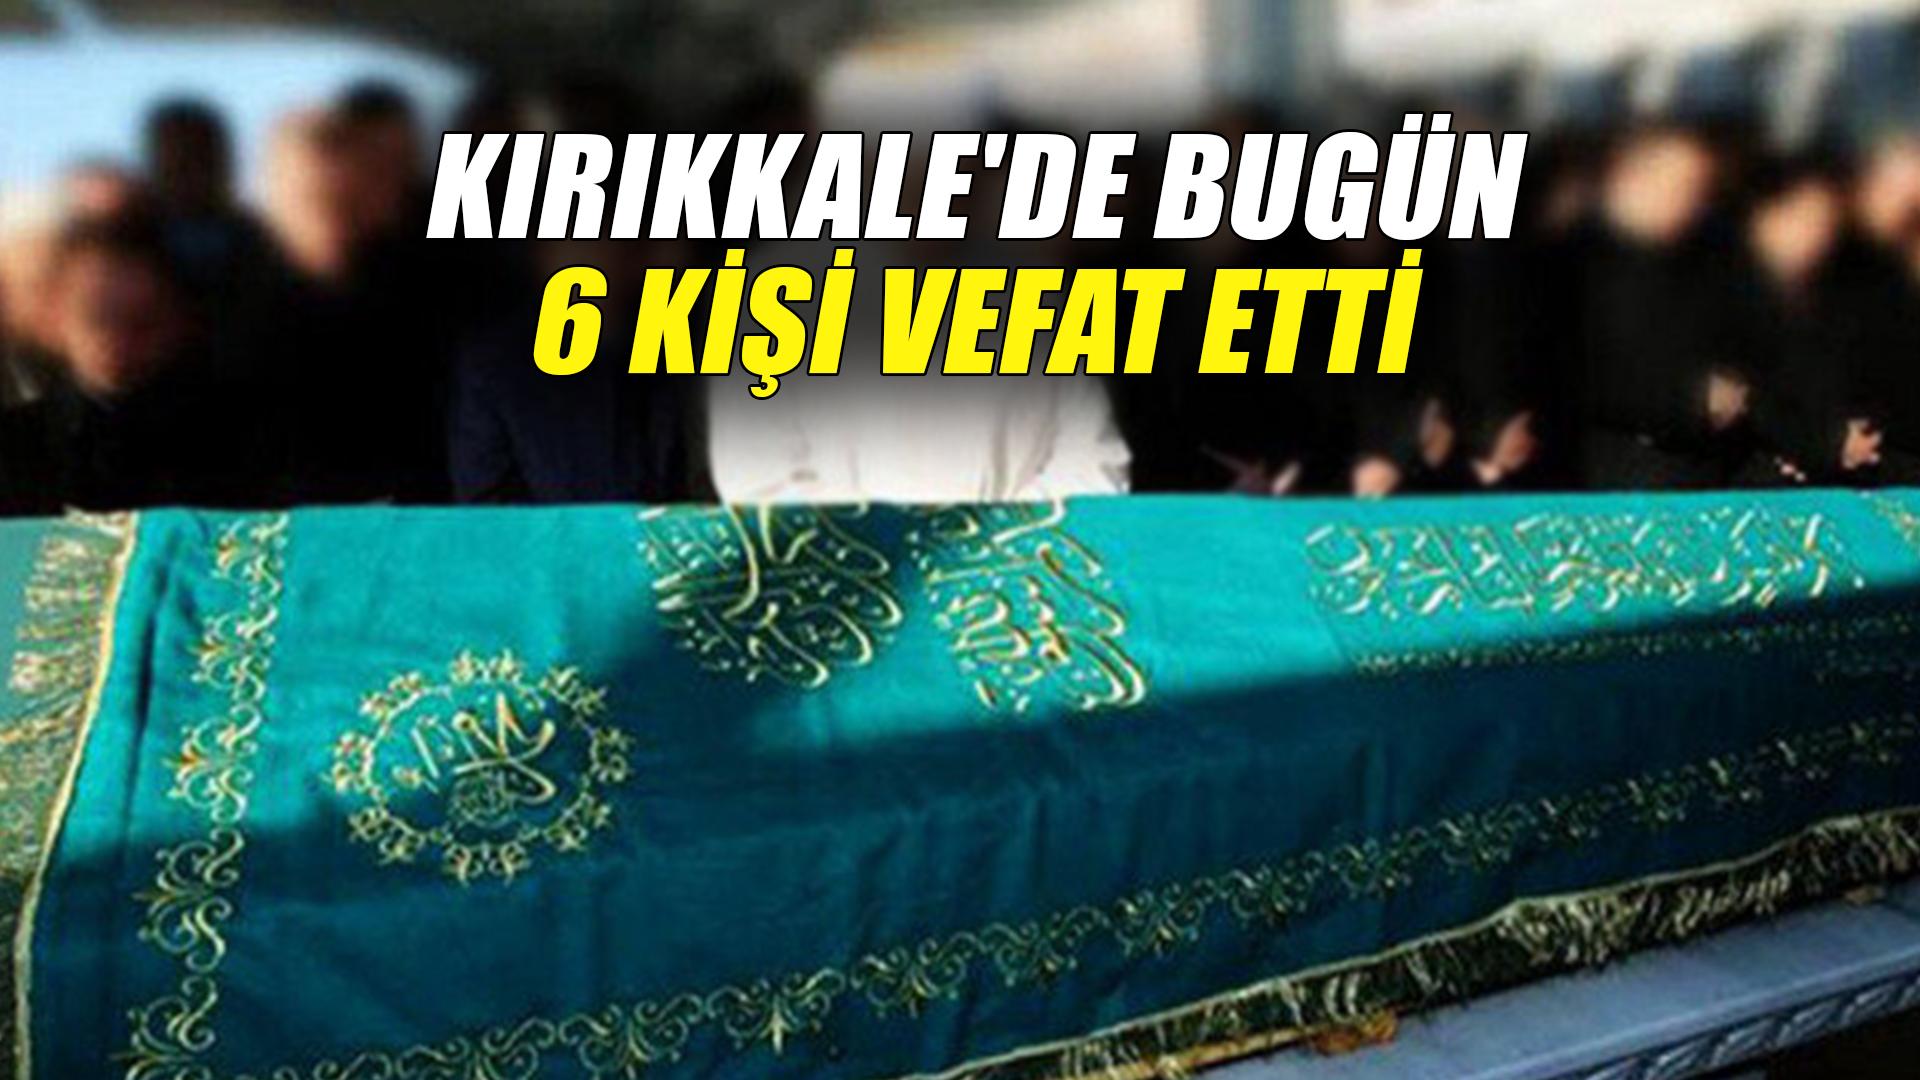 Kırıkkale'de bugün 6 kişi vefat etti